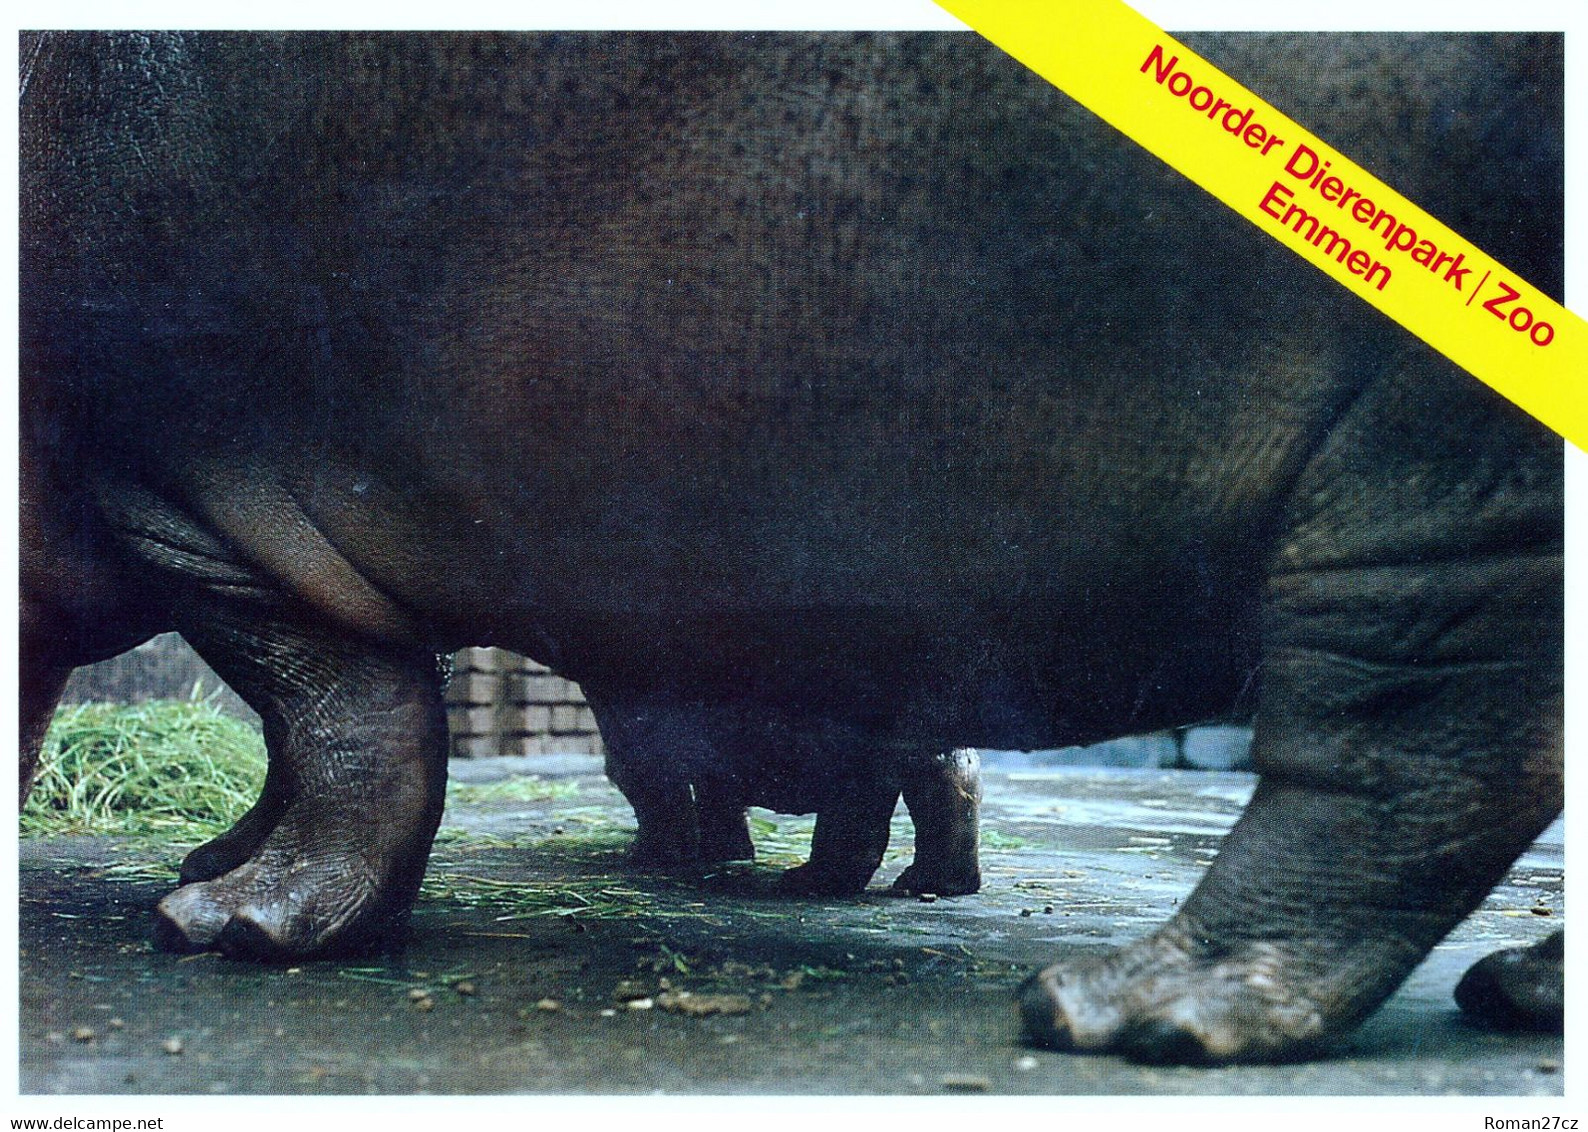 Noorder Dierenpark (ZOO Emmen), NL - Hippopotamus - Emmen